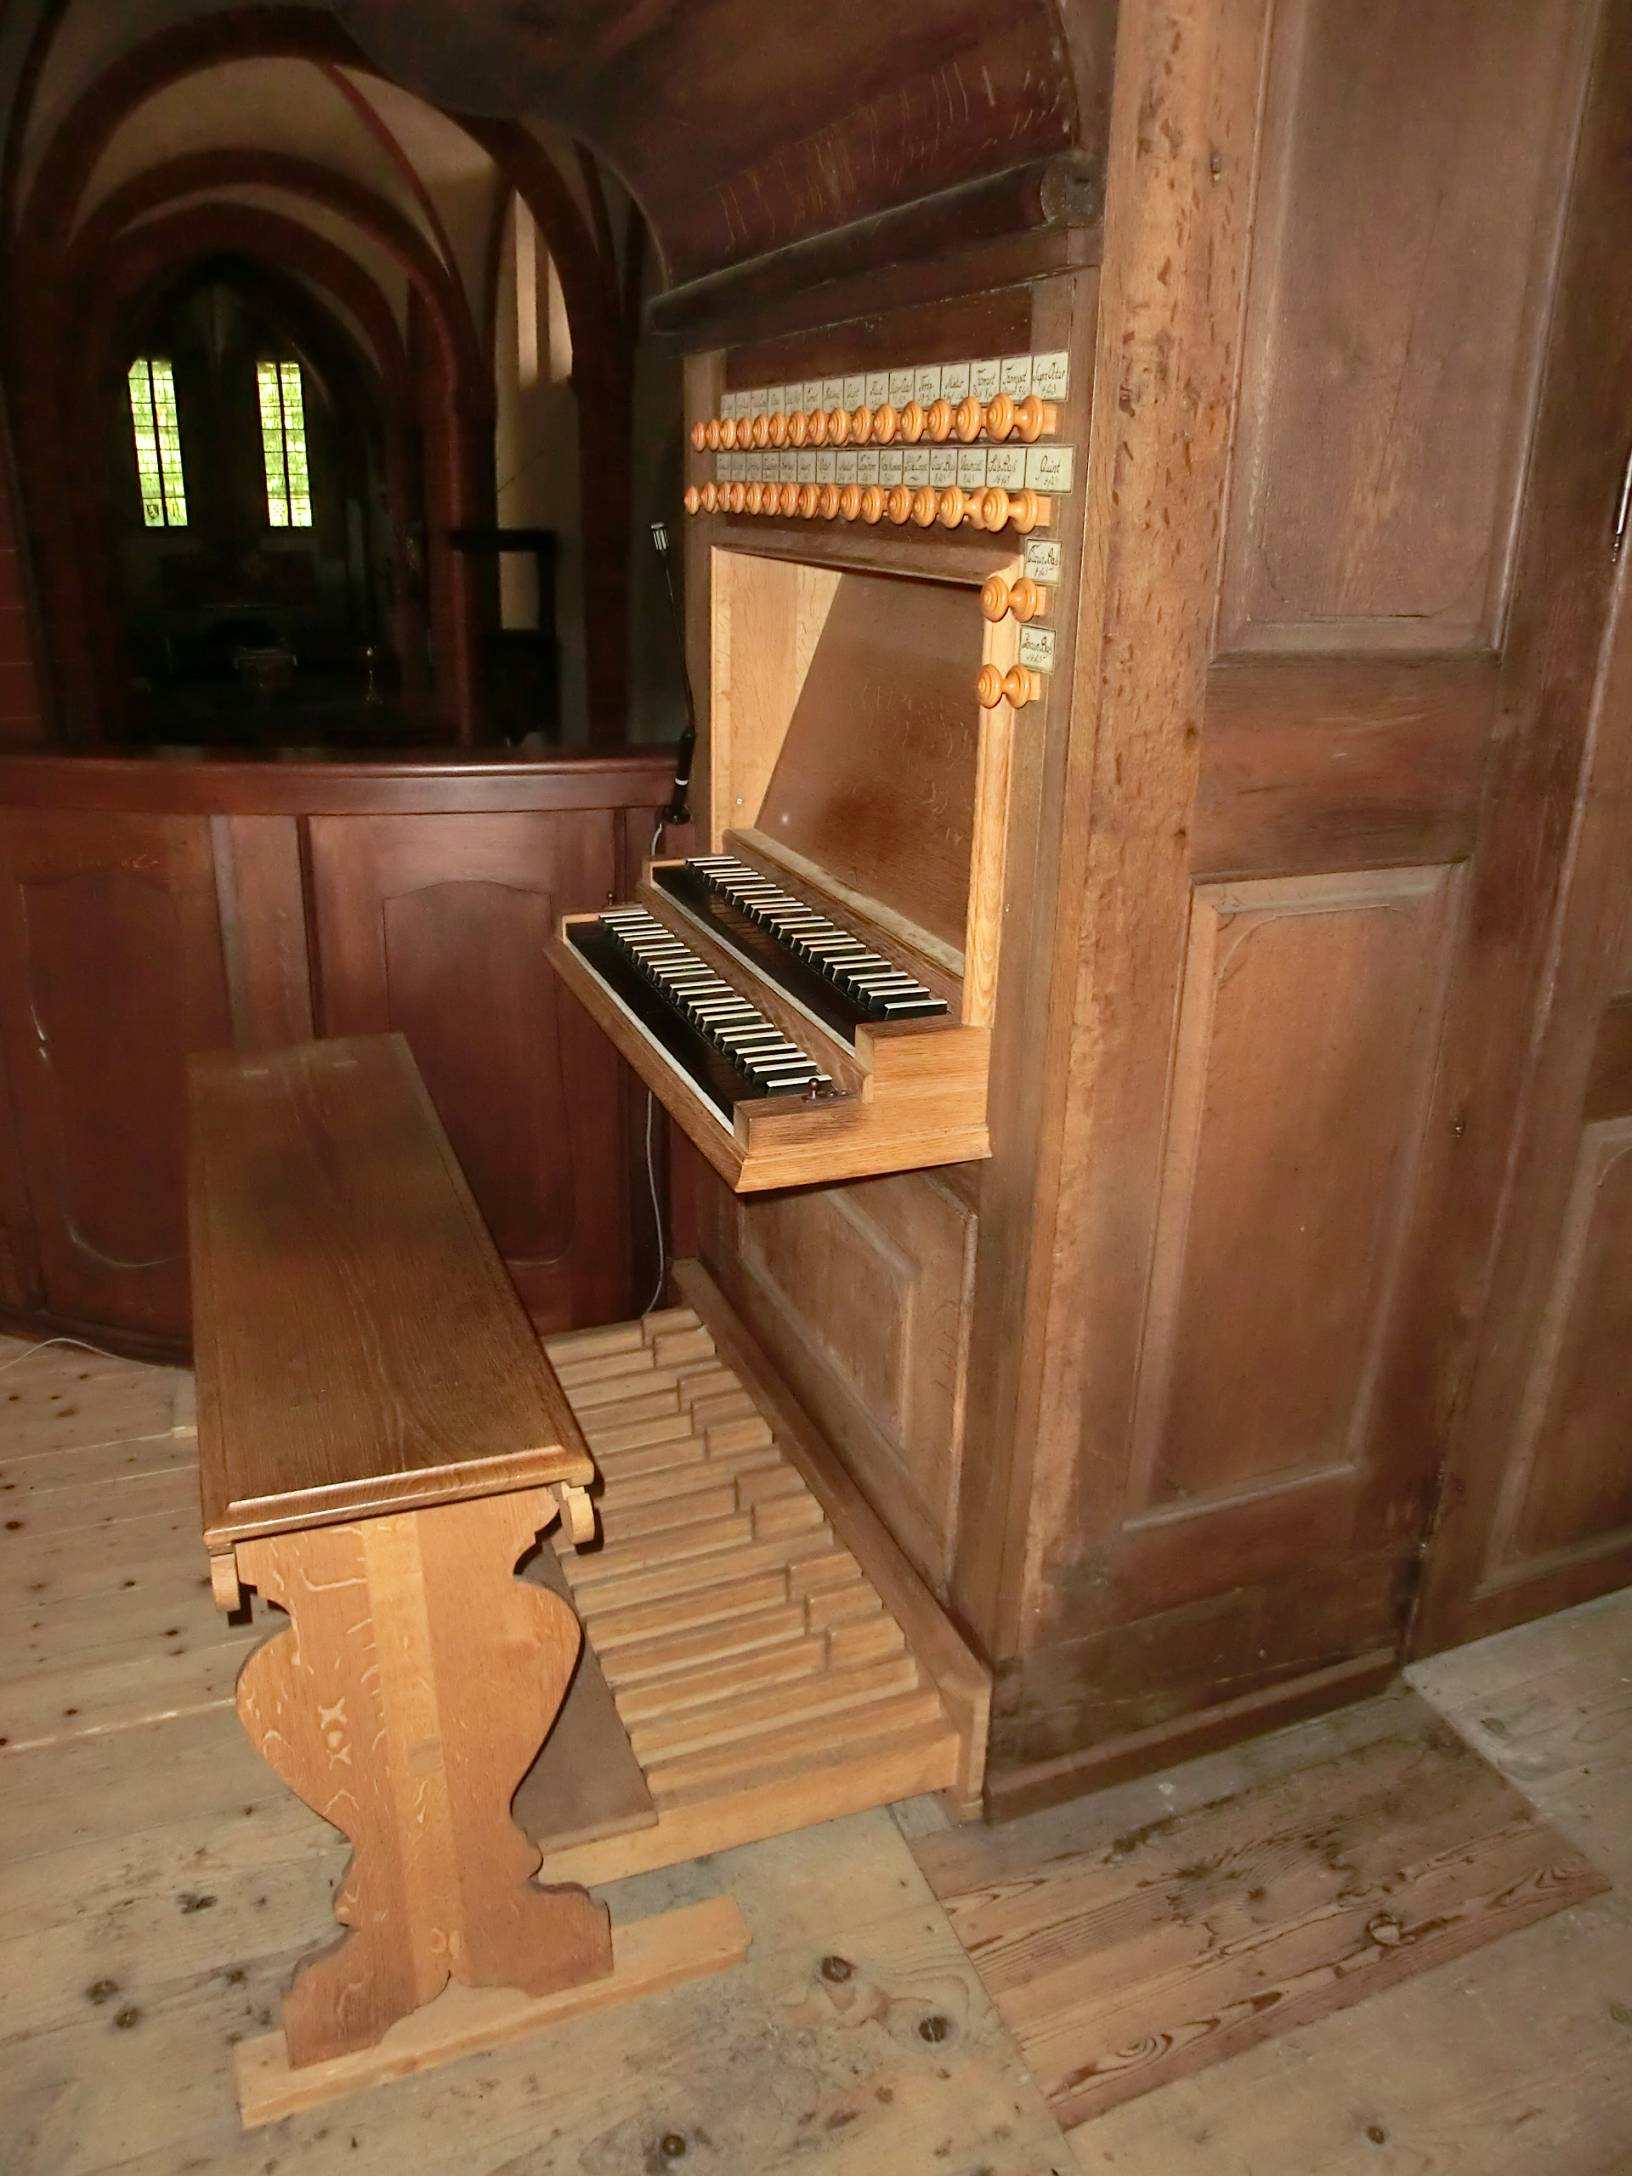 Orgelspielanlage